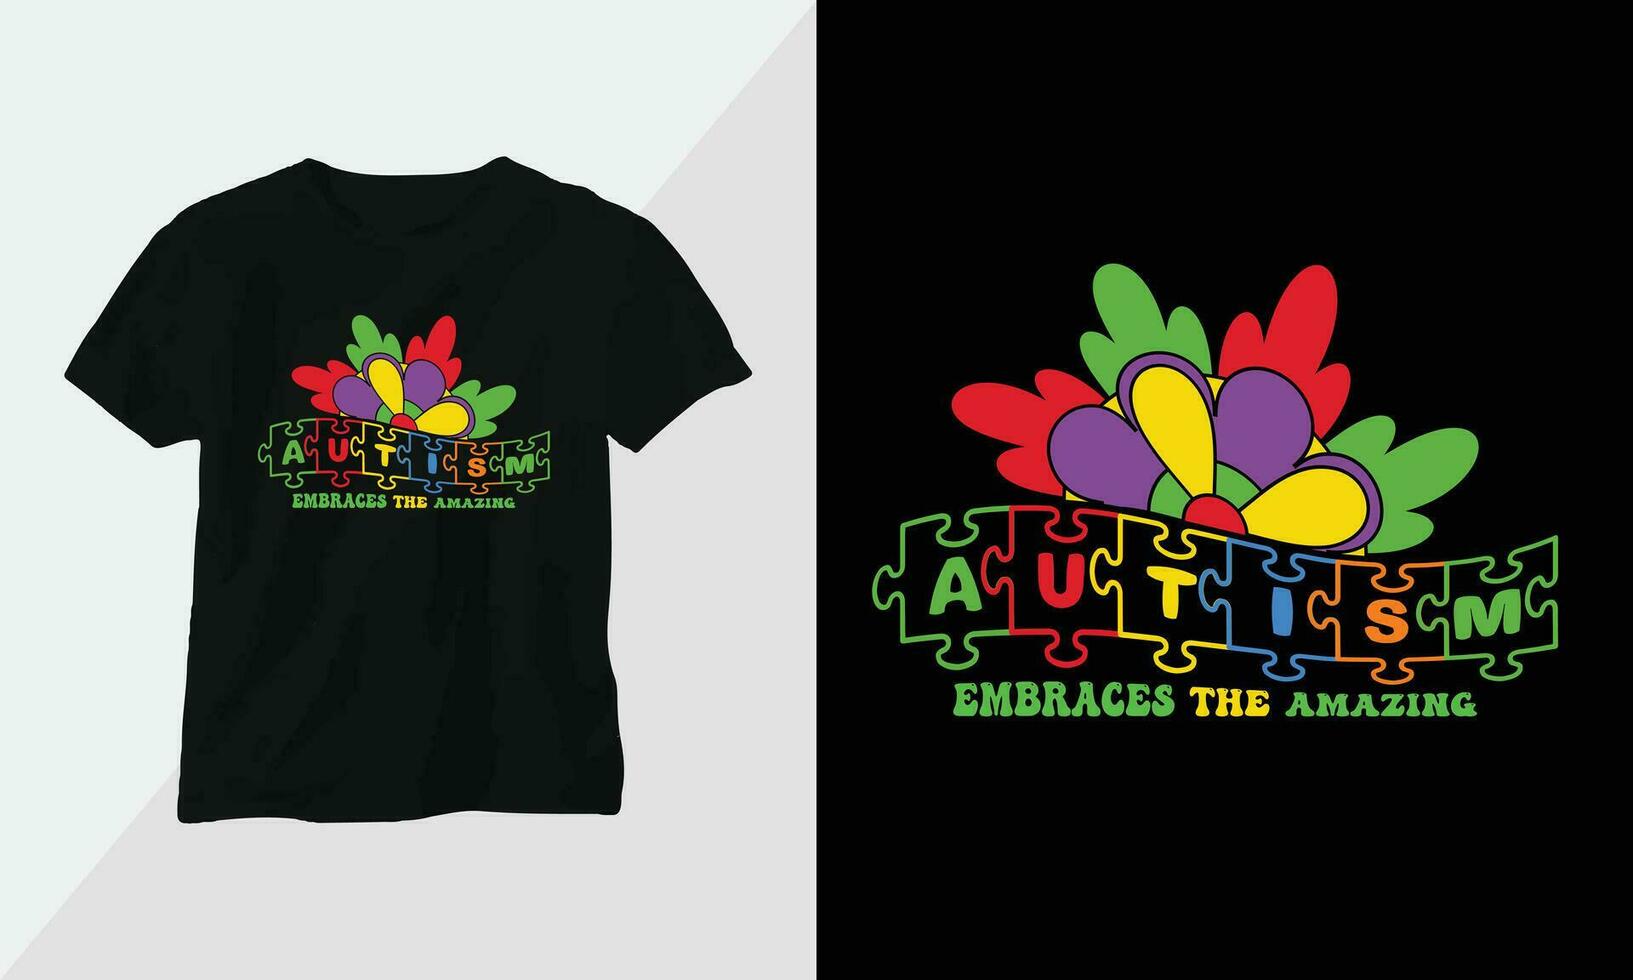 Autismus T-Shirt Design Konzept. alle Designs sind bunt und erstellt mit Band, Rätsel, Liebe, usw vektor